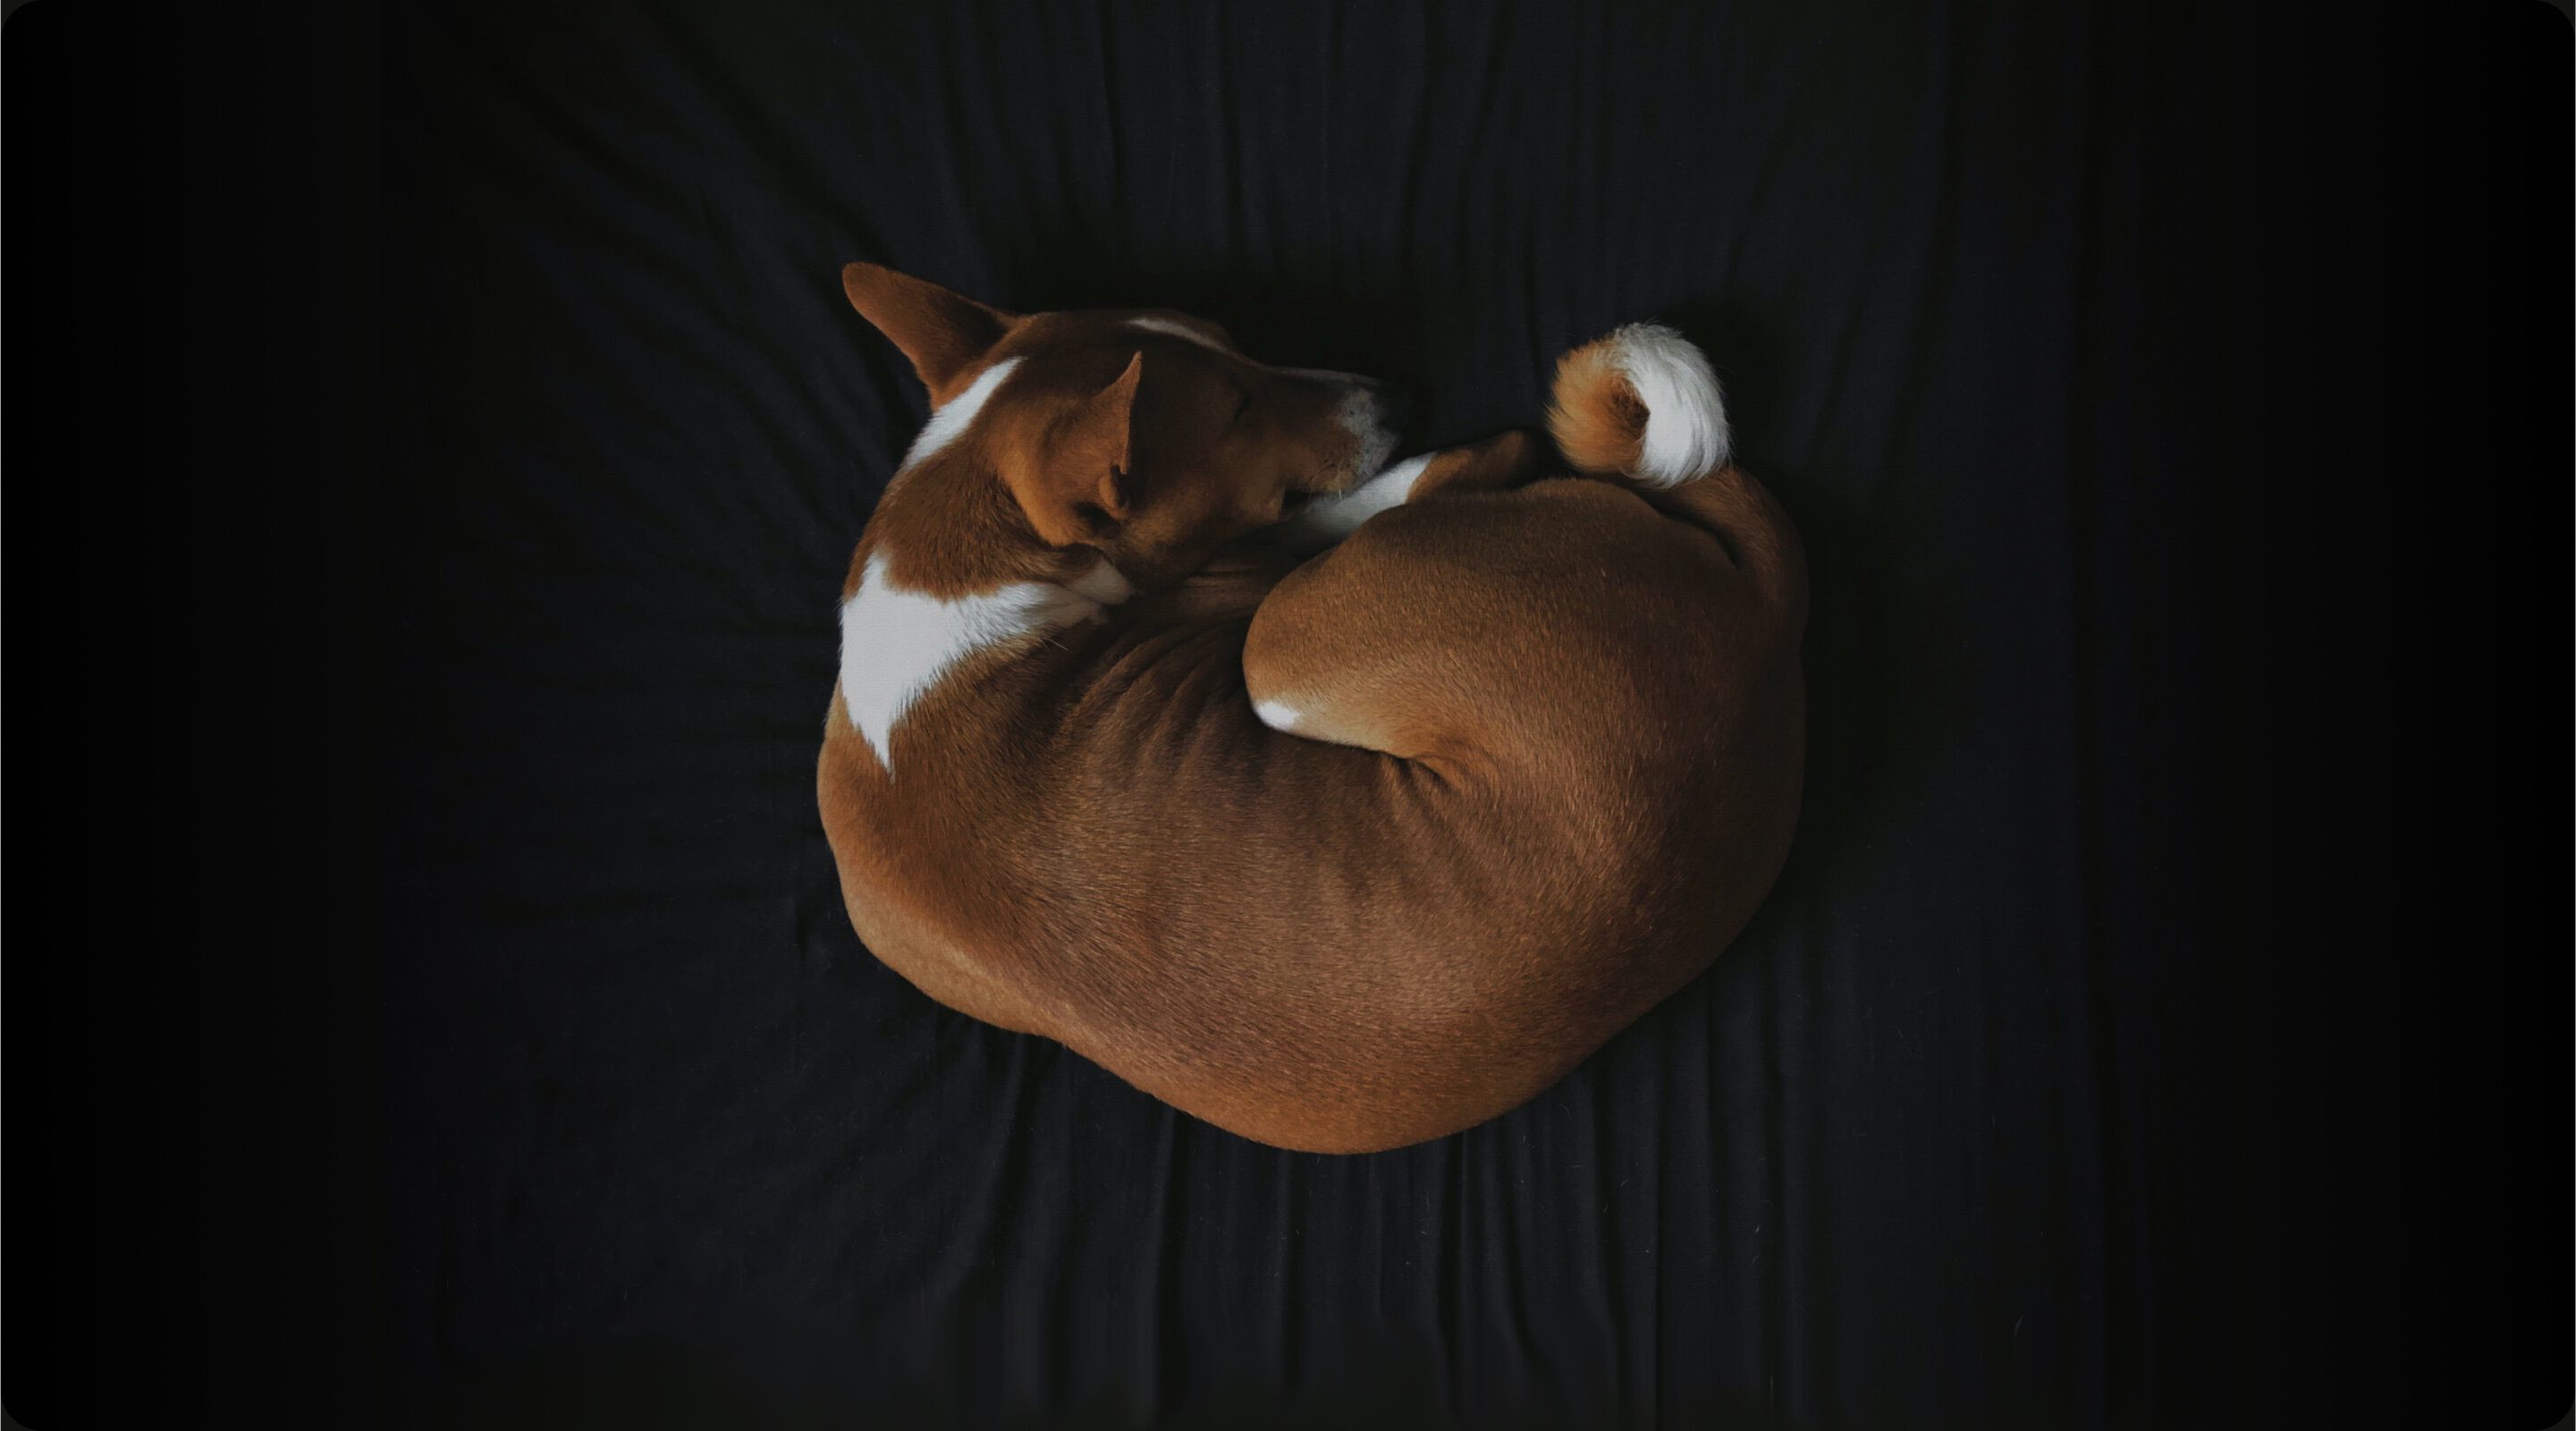 A dog sleeping